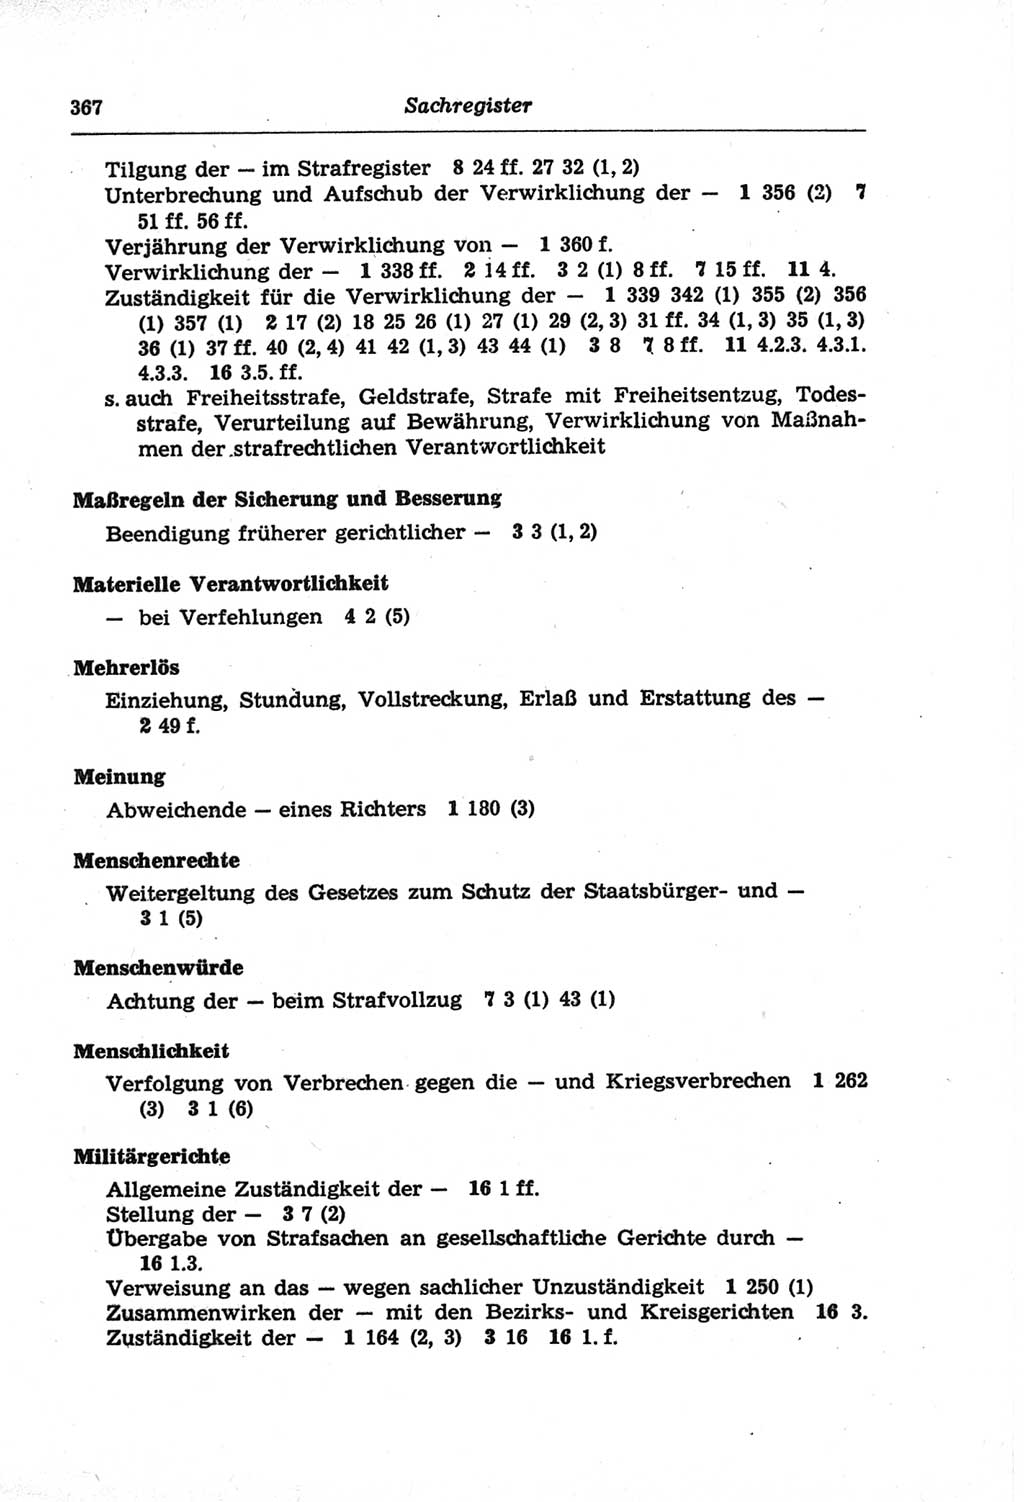 Strafprozeßordnung (StPO) der Deutschen Demokratischen Republik (DDR) und angrenzende Gesetze und Bestimmungen 1968, Seite 367 (StPO Ges. Bstgn. DDR 1968, S. 367)